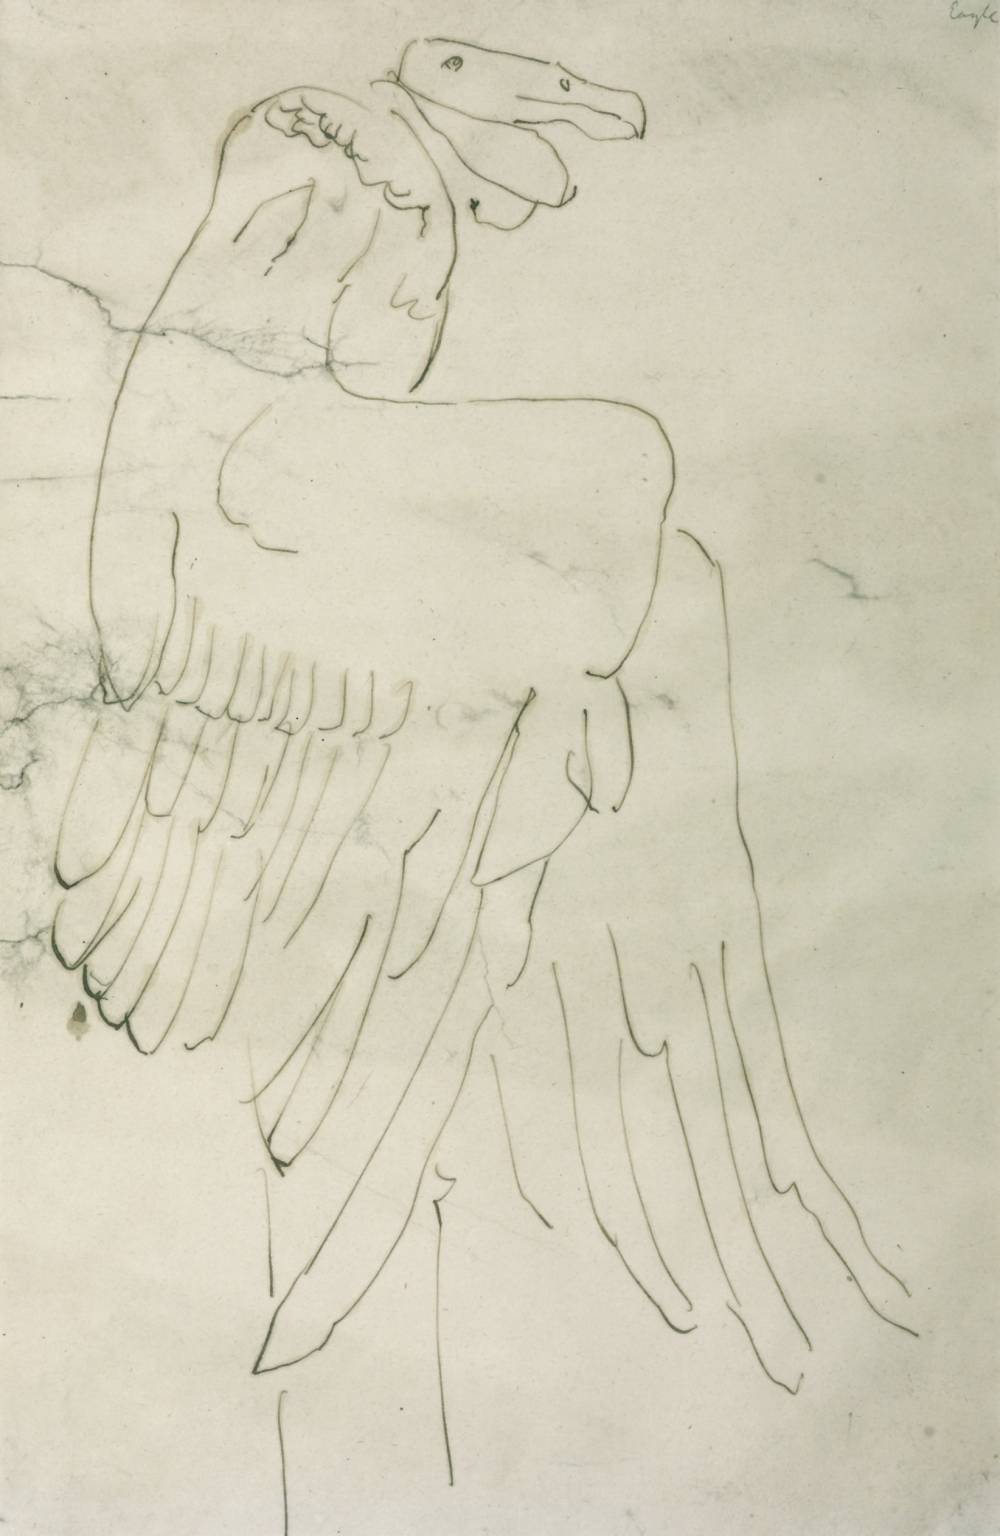 Vulture I (1912-13)